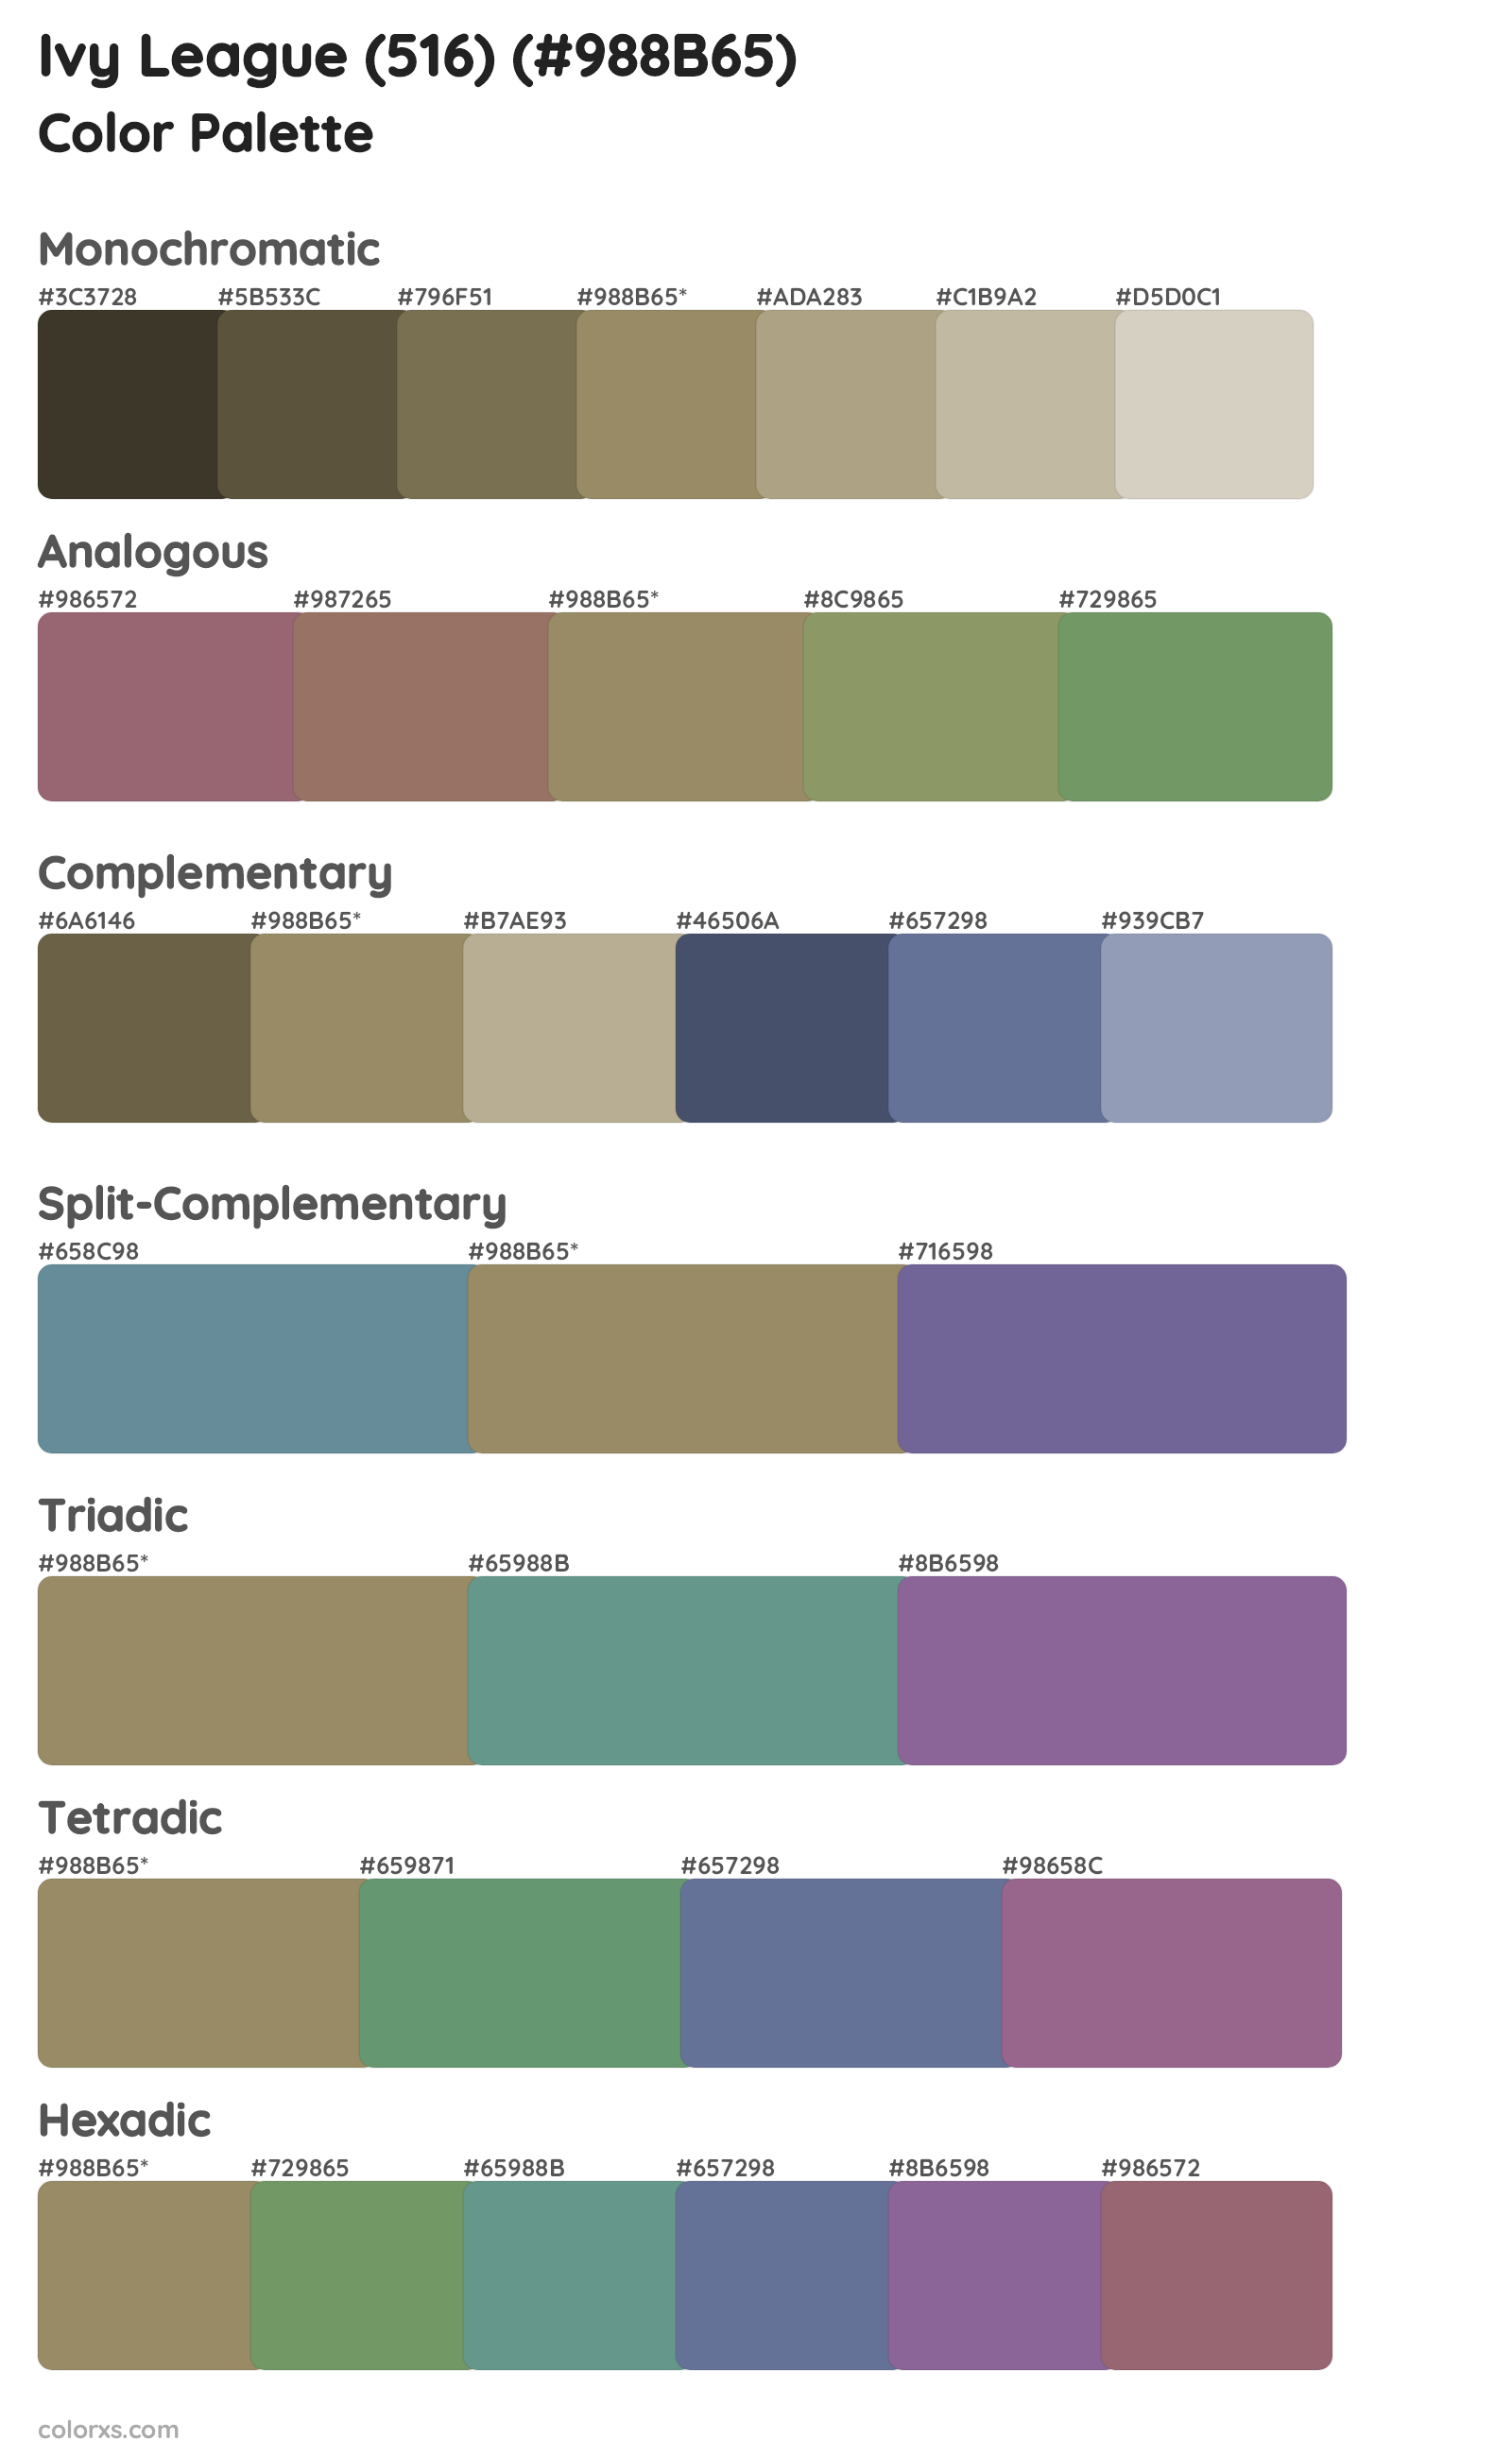 Ivy League (516) Color Scheme Palettes